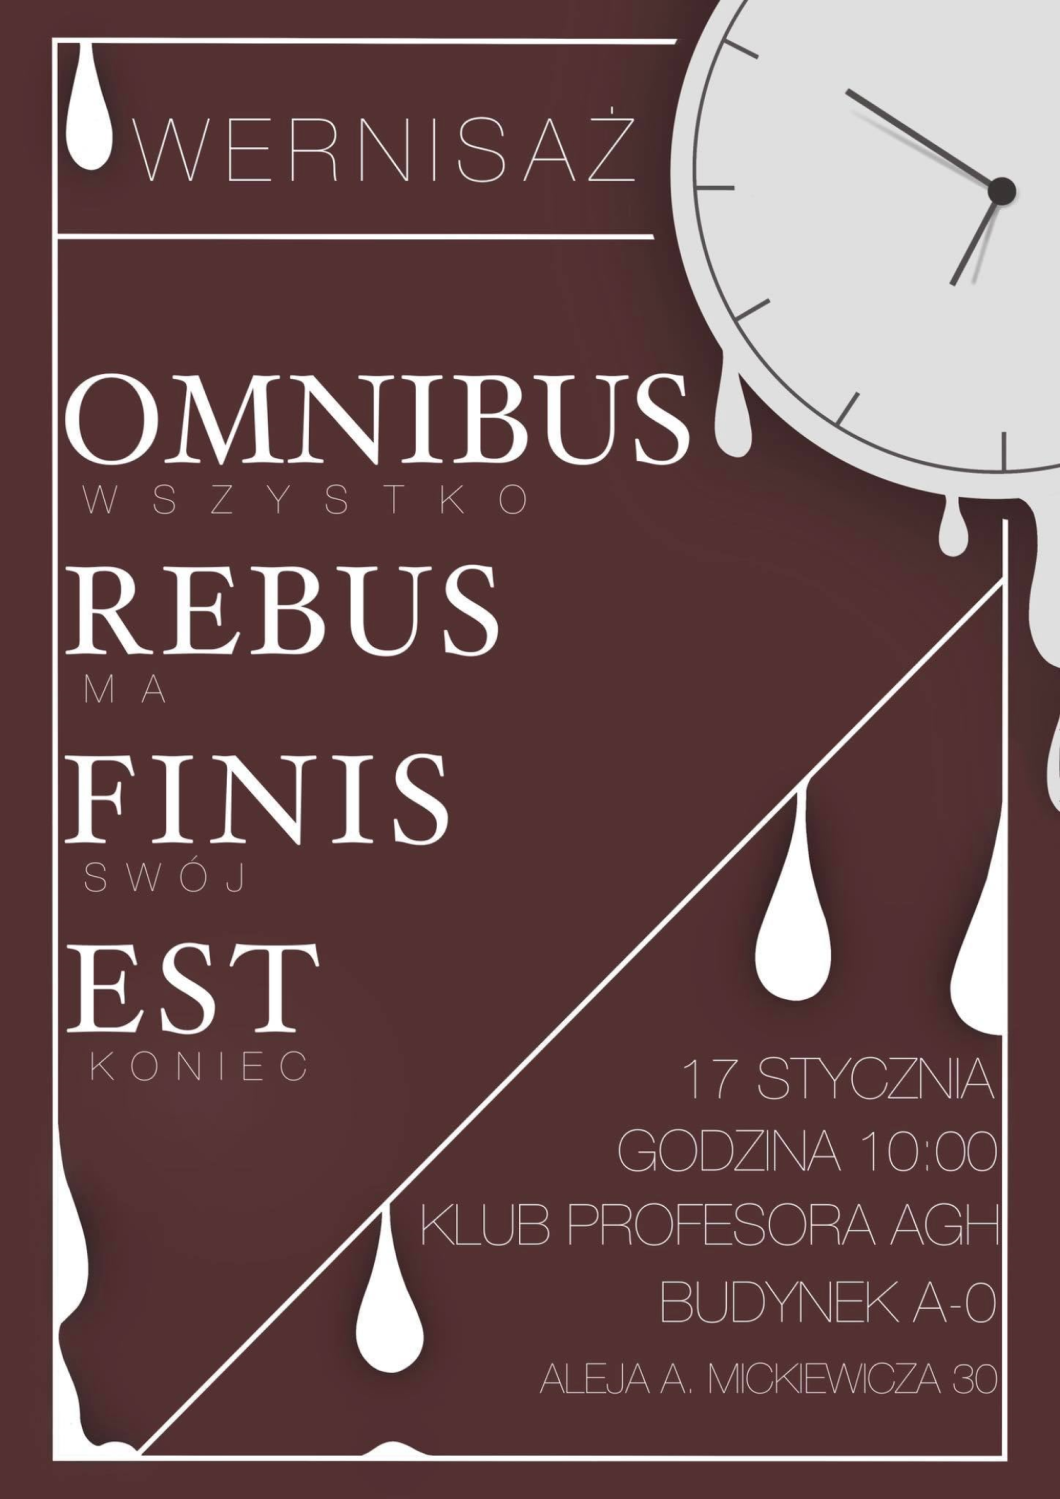 plakat - Wernisaż fotografii Omnibus rebus finis est